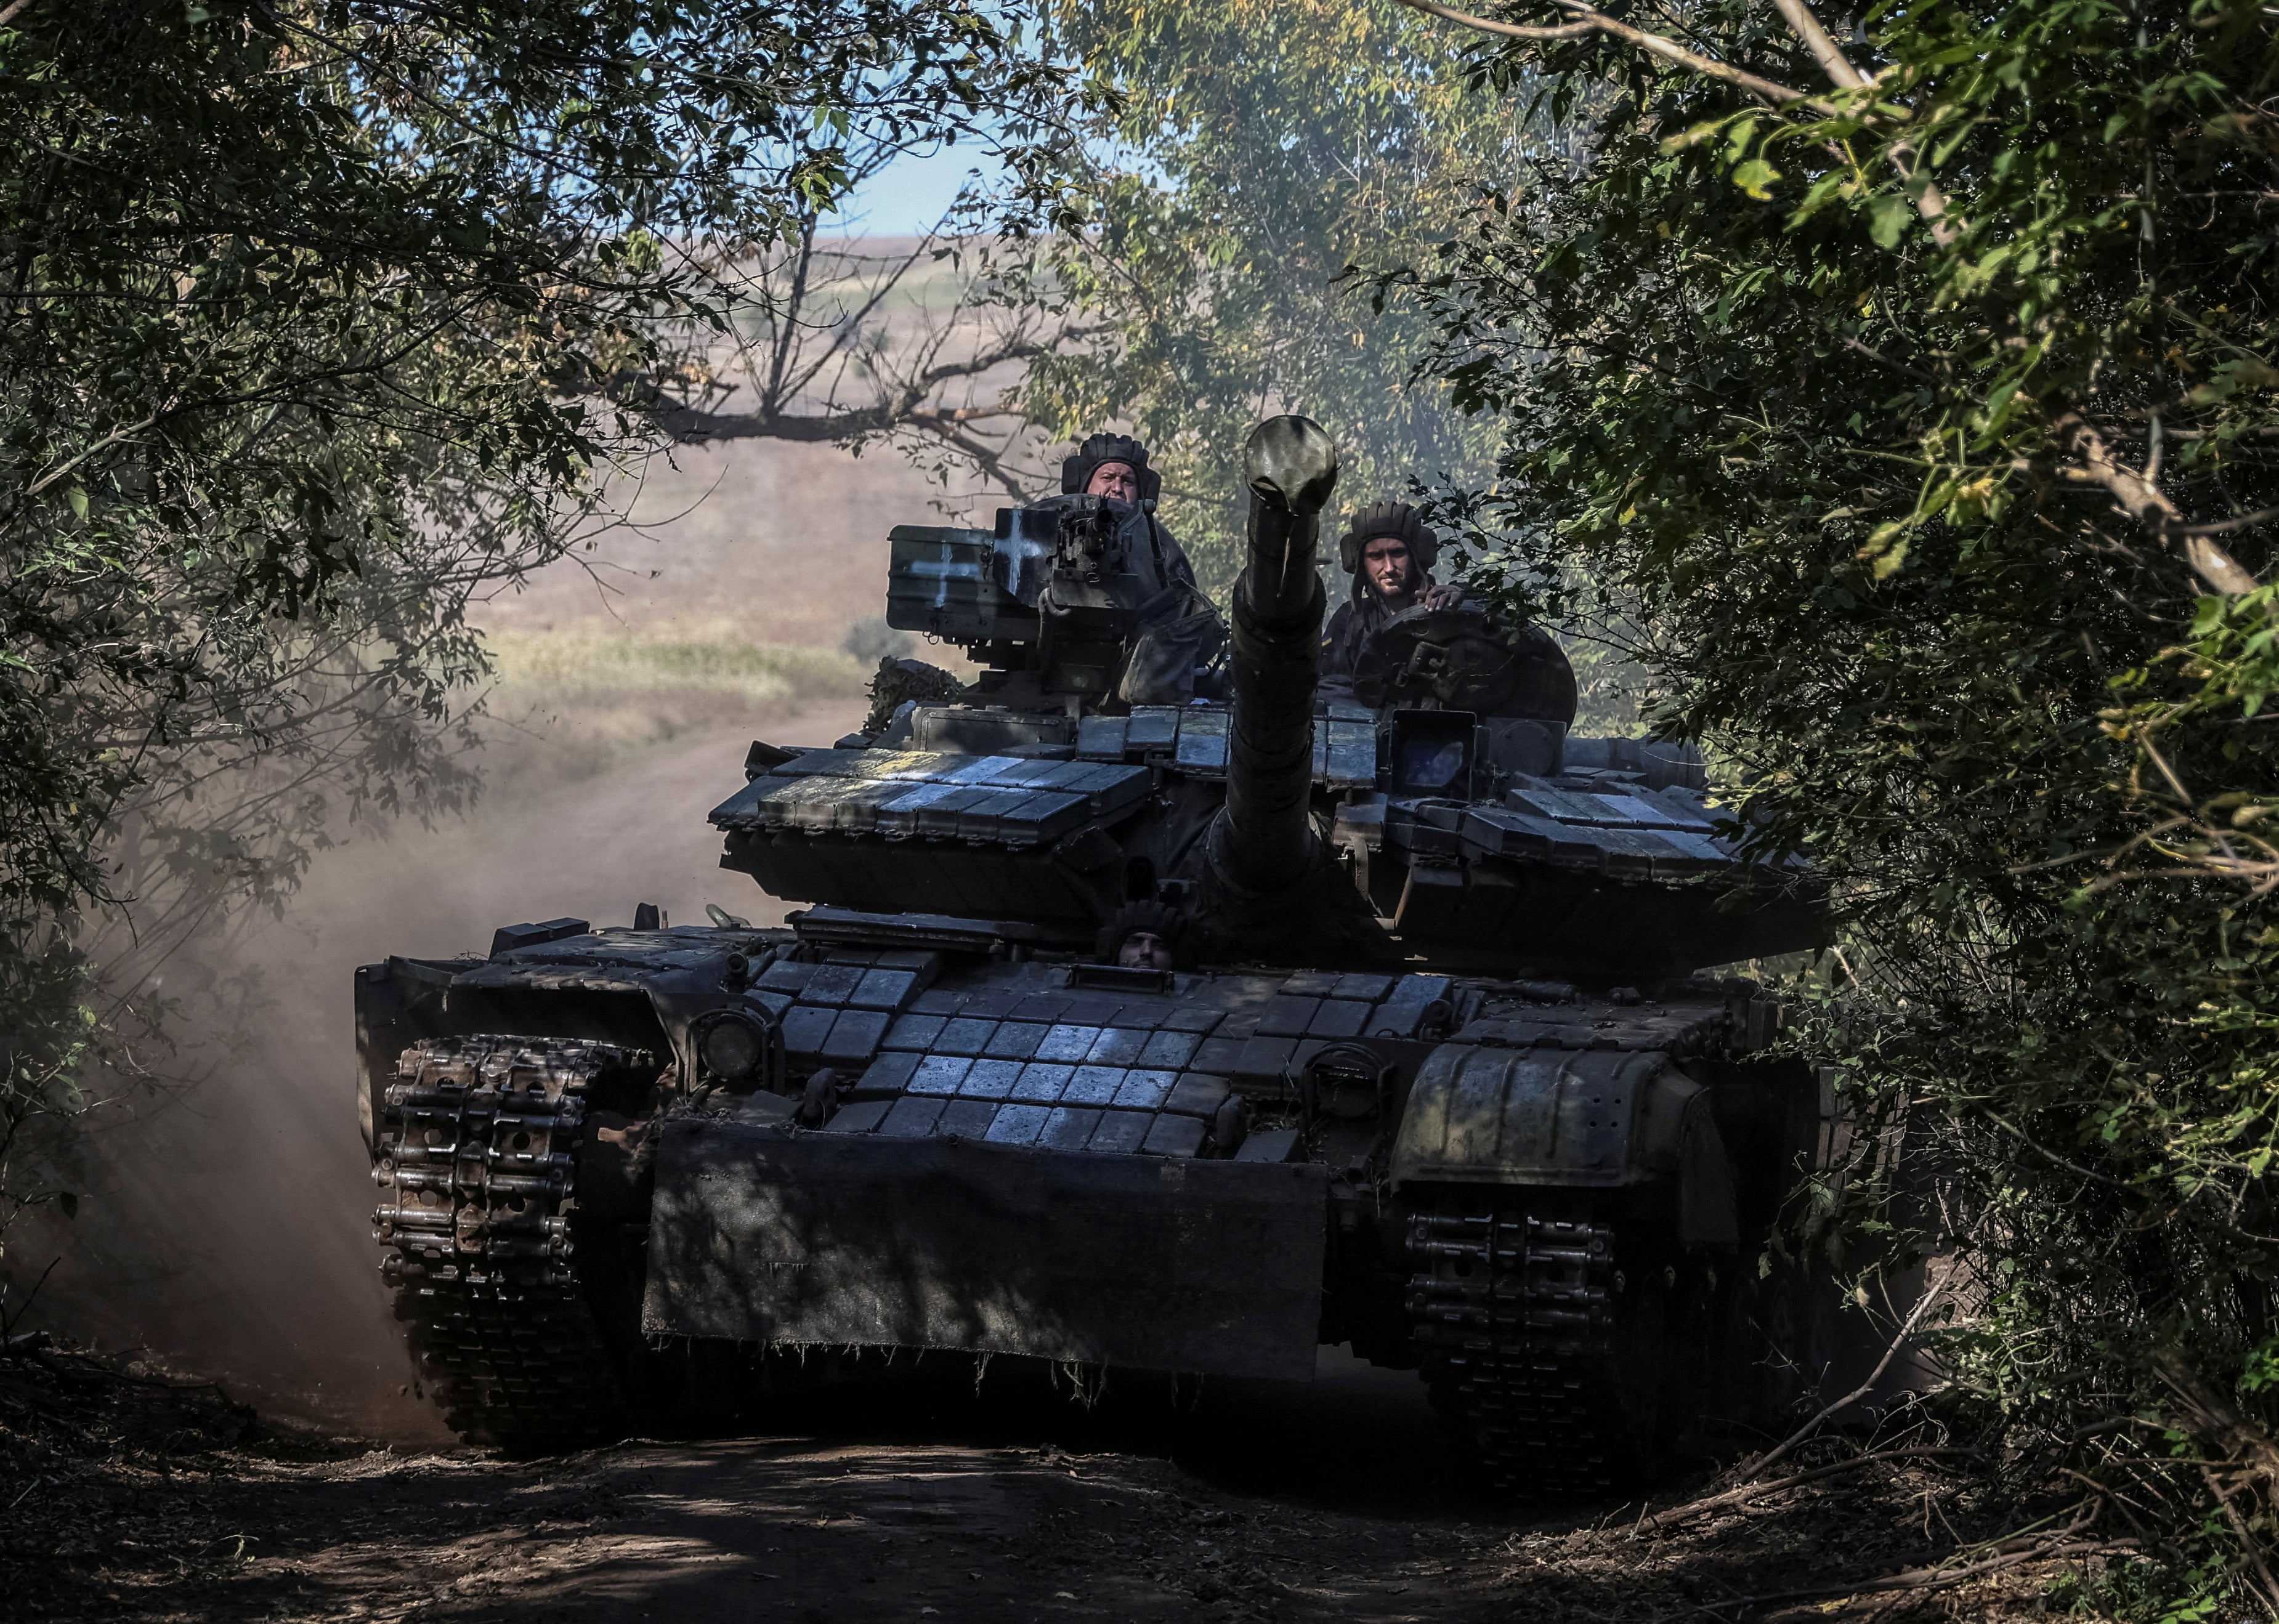 Ukrainian servicemen ride a tank in Donetsk region, eastern Ukraine